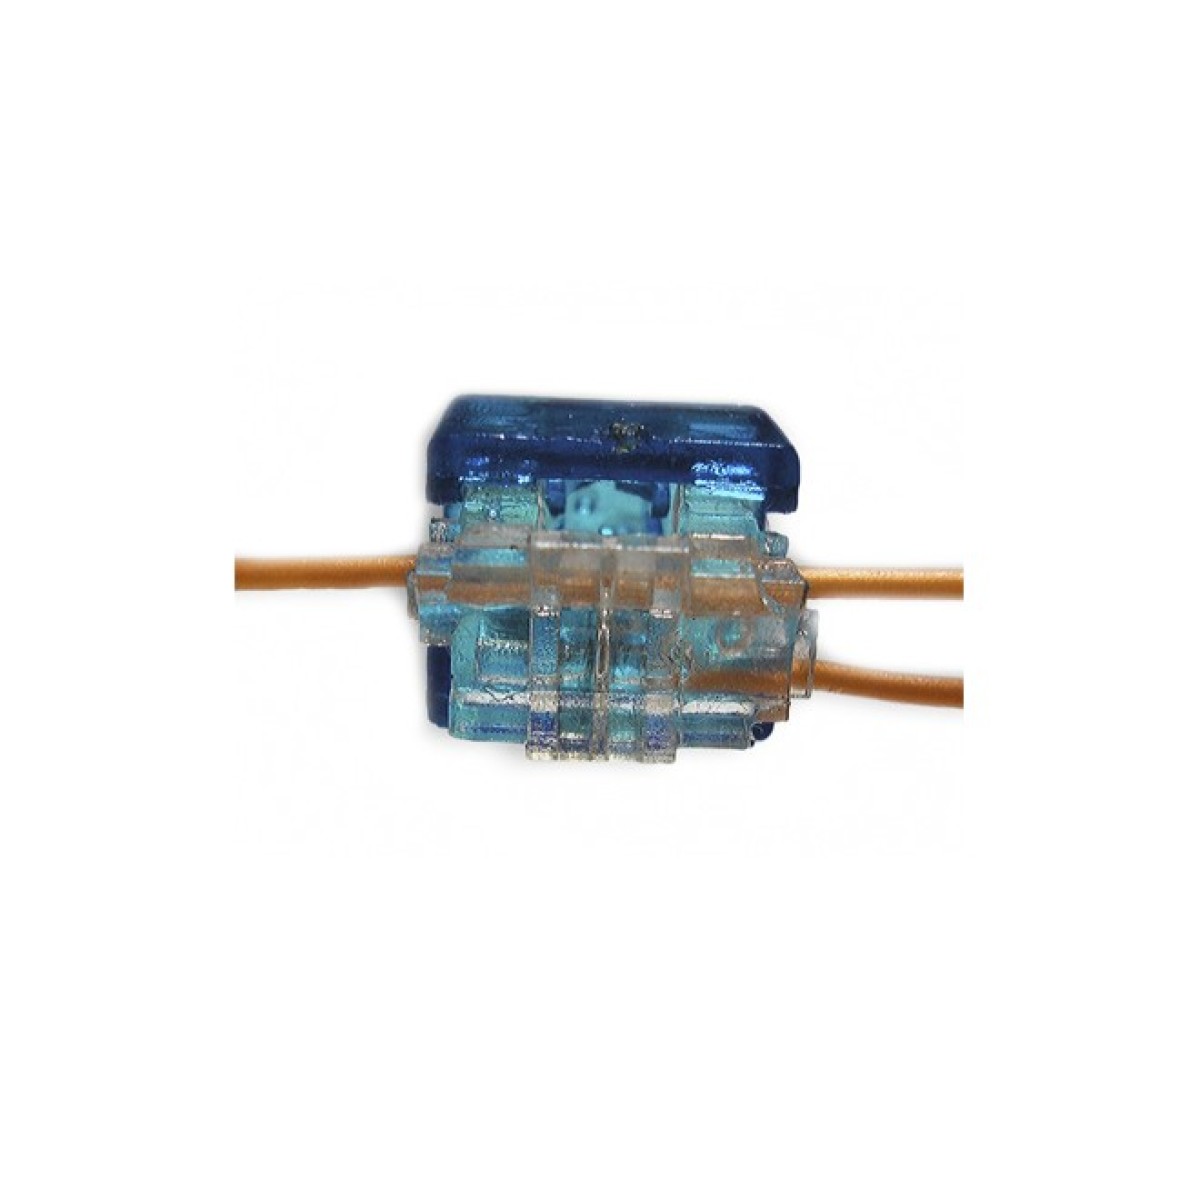 Скотчлок В-тип (двухсторонний, 2 провода 0,4…0,7 мм), синий Kingda - 100 шт. 98_98.jpg - фото 2